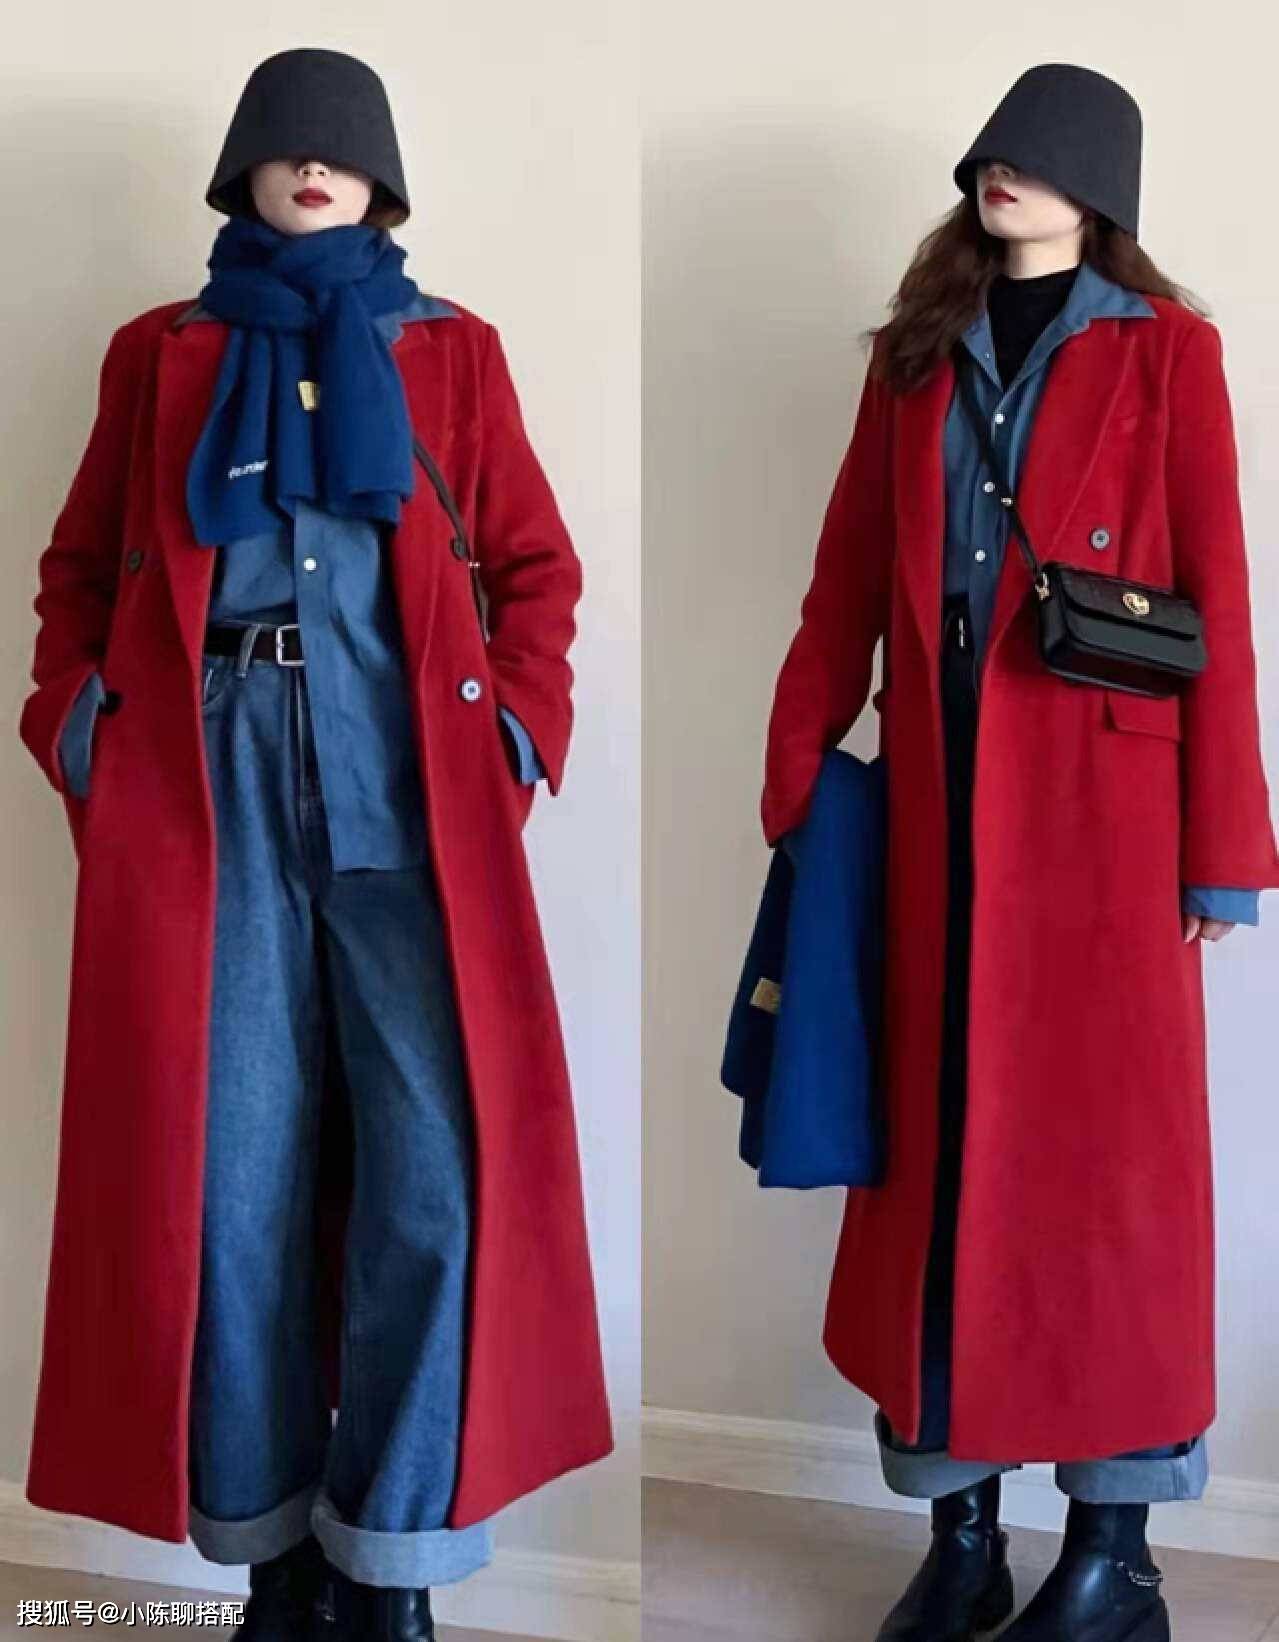 穿衣喜欢低调一些的女人可以将内搭与外套的颜色互换,墨蓝色大衣 红色